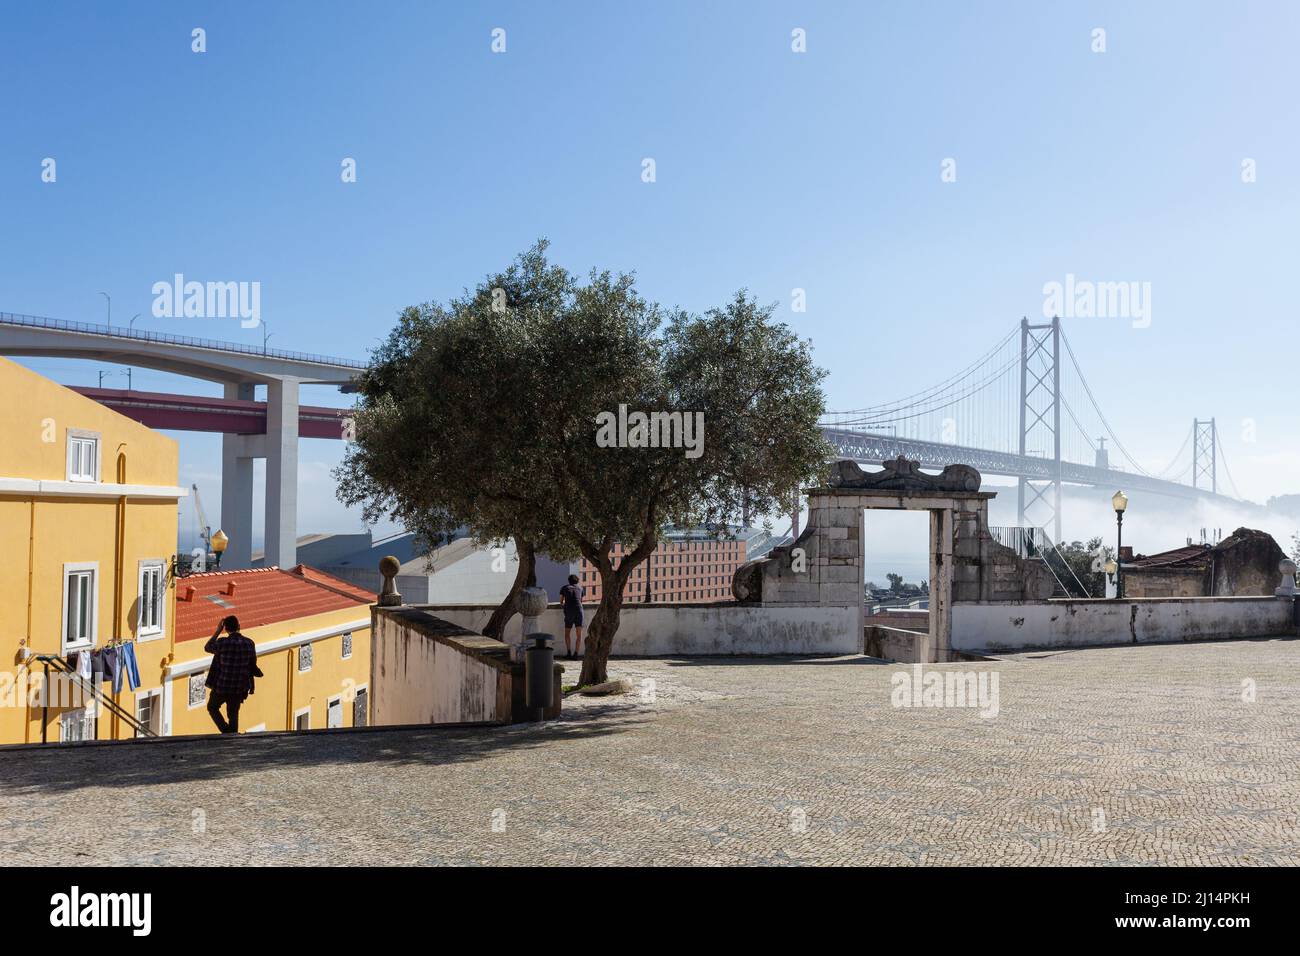 Das Miradouro de Santo Amaro mit seinem atemberaubenden Blick auf die berühmte Brücke Ponte de 25 Abril und Rio Tejo im Stadtteil Alcântara in Lissabon. Stockfoto